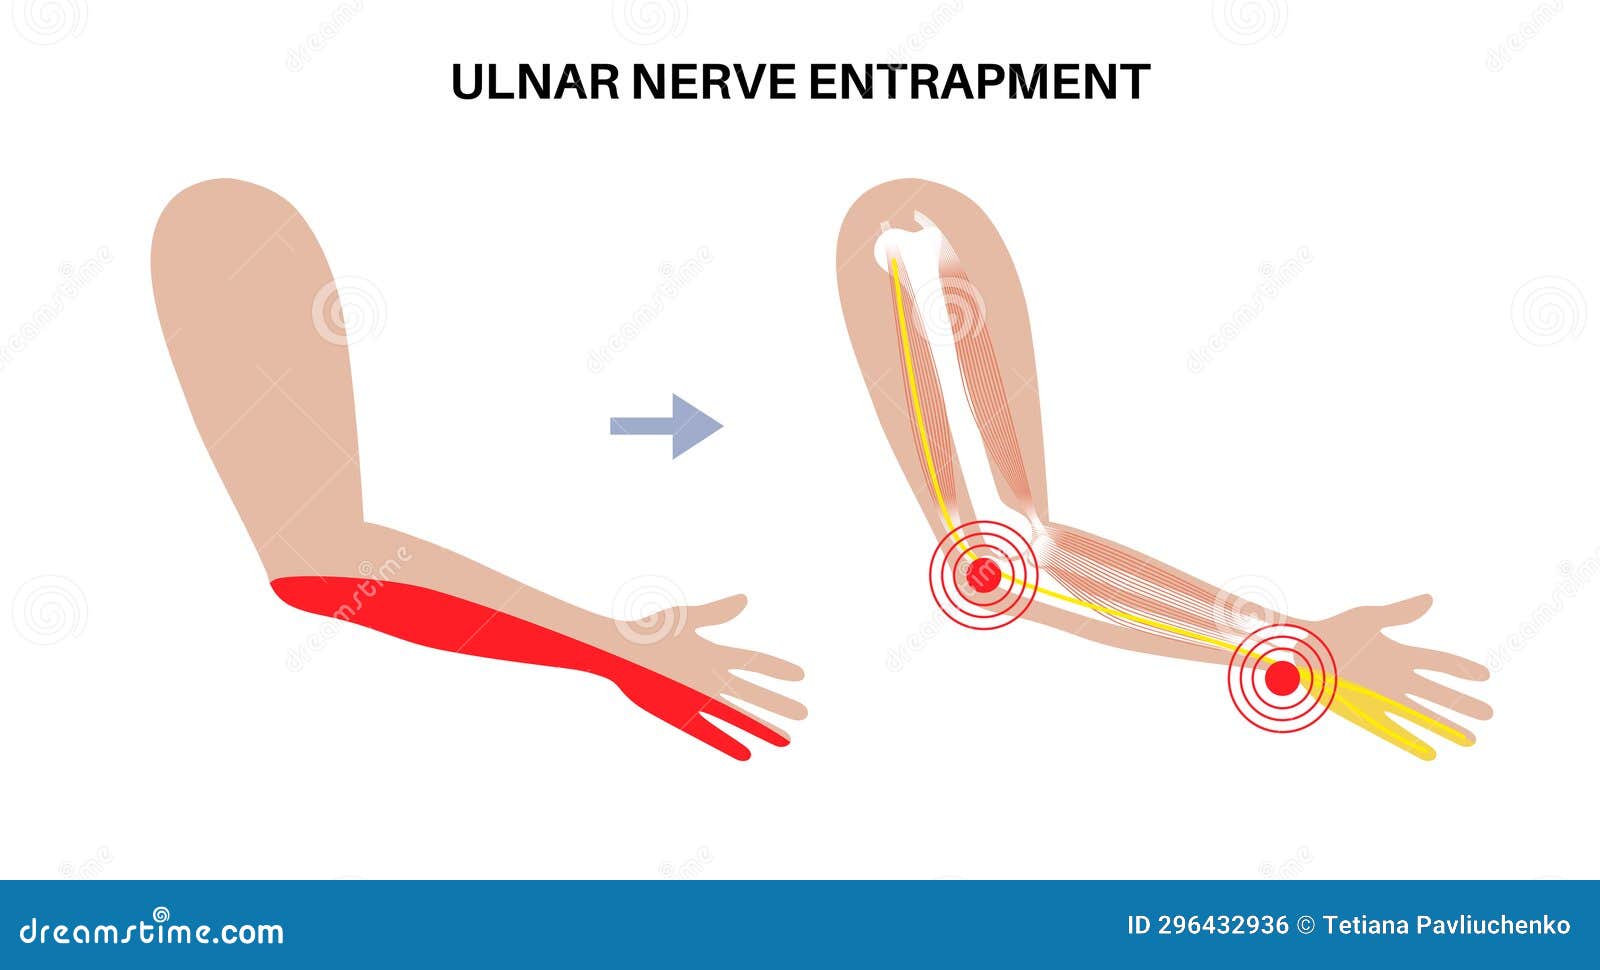 ulnar nerve entrapment